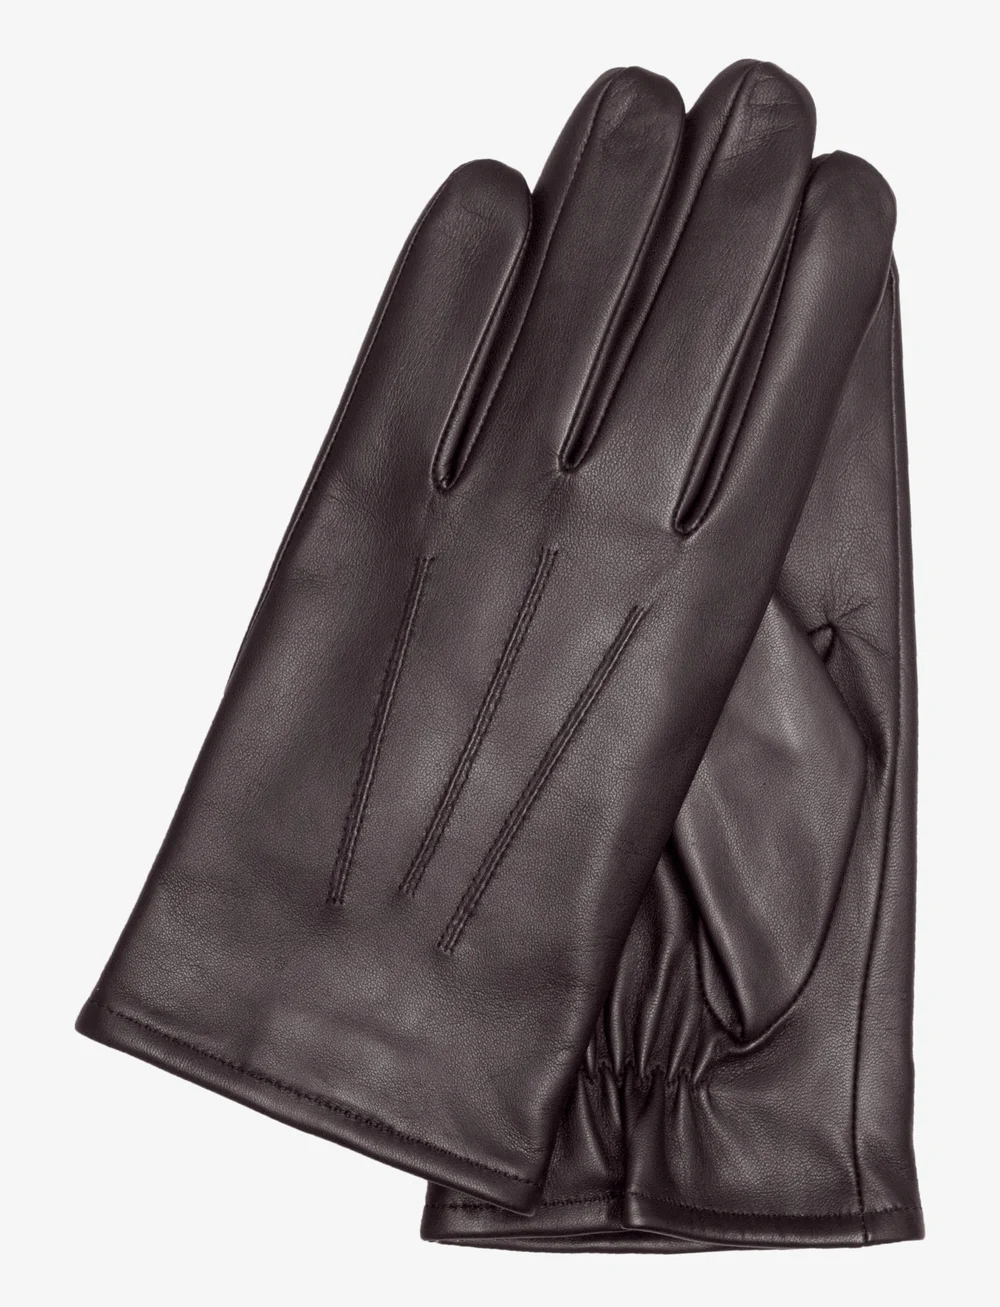 - Kessler Gloves Liam